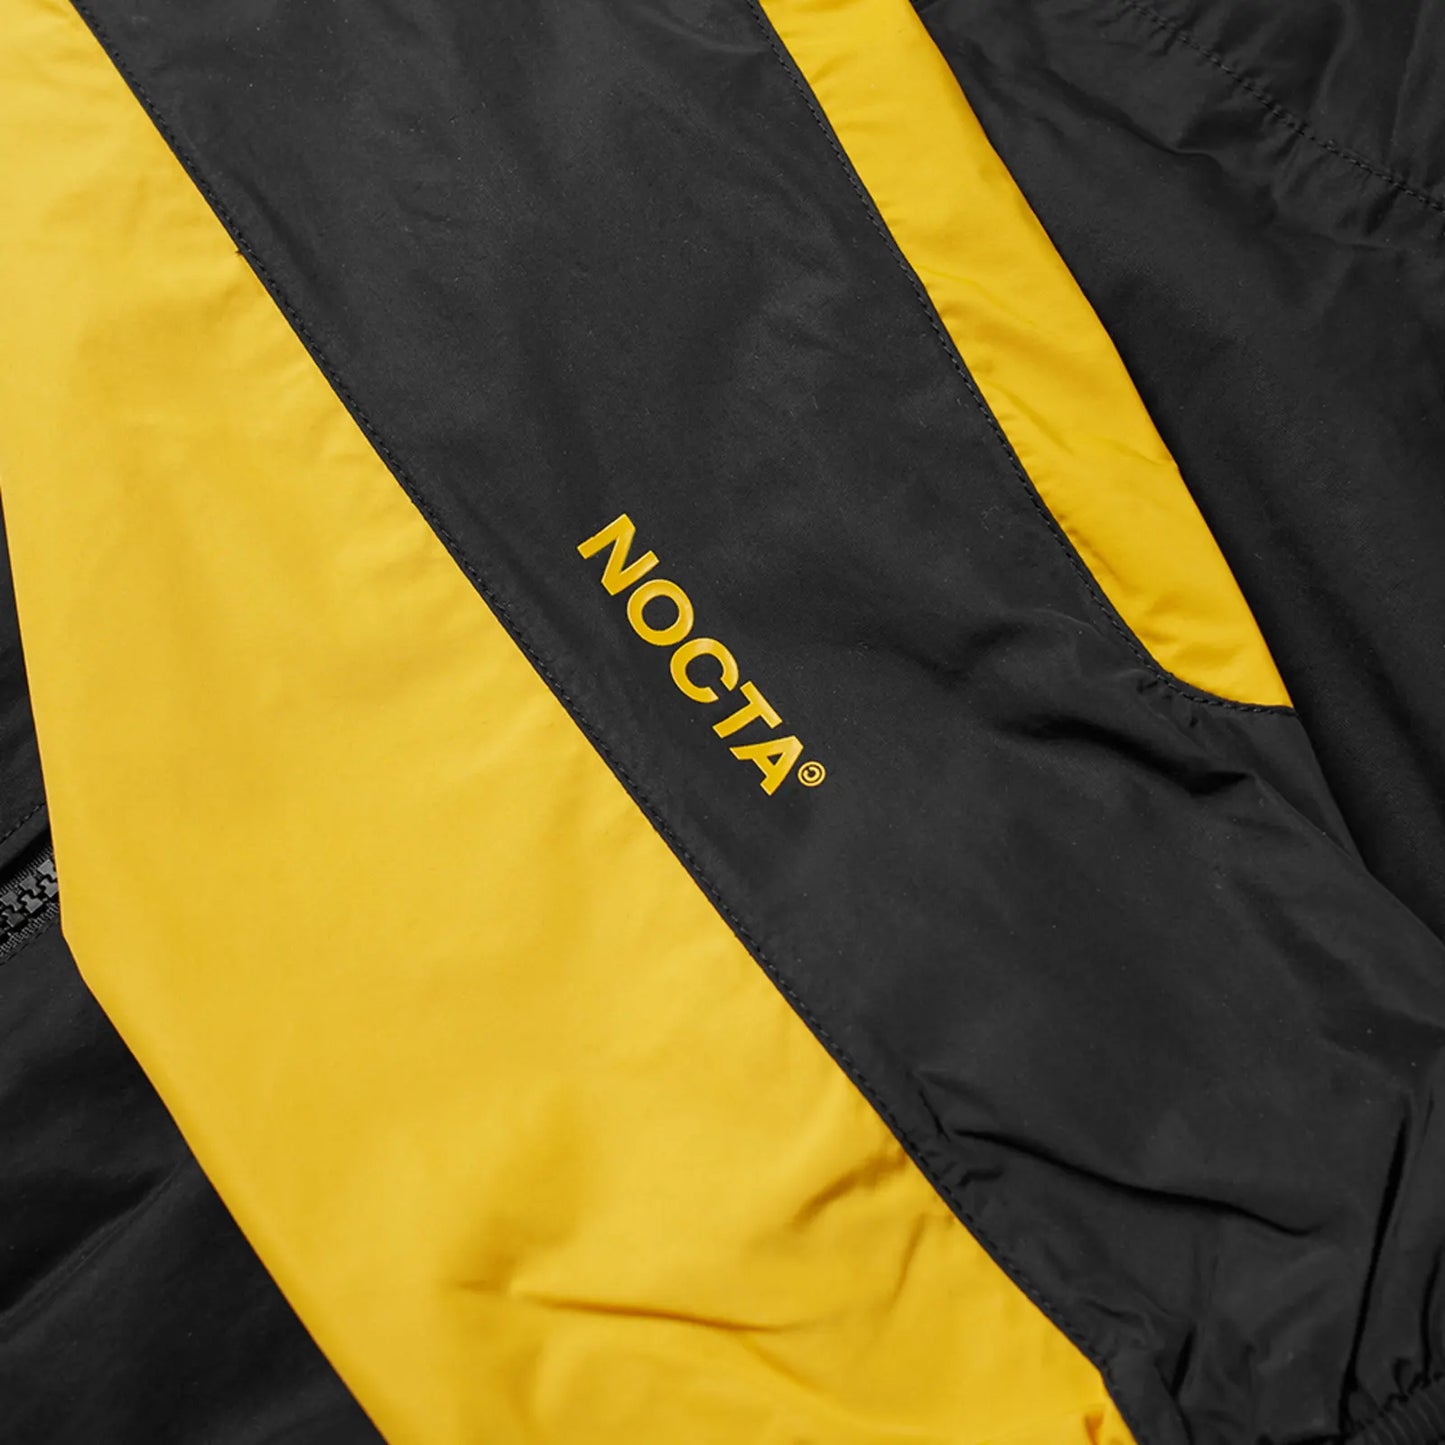 Nike x NOCTA Track Jacket “Black”